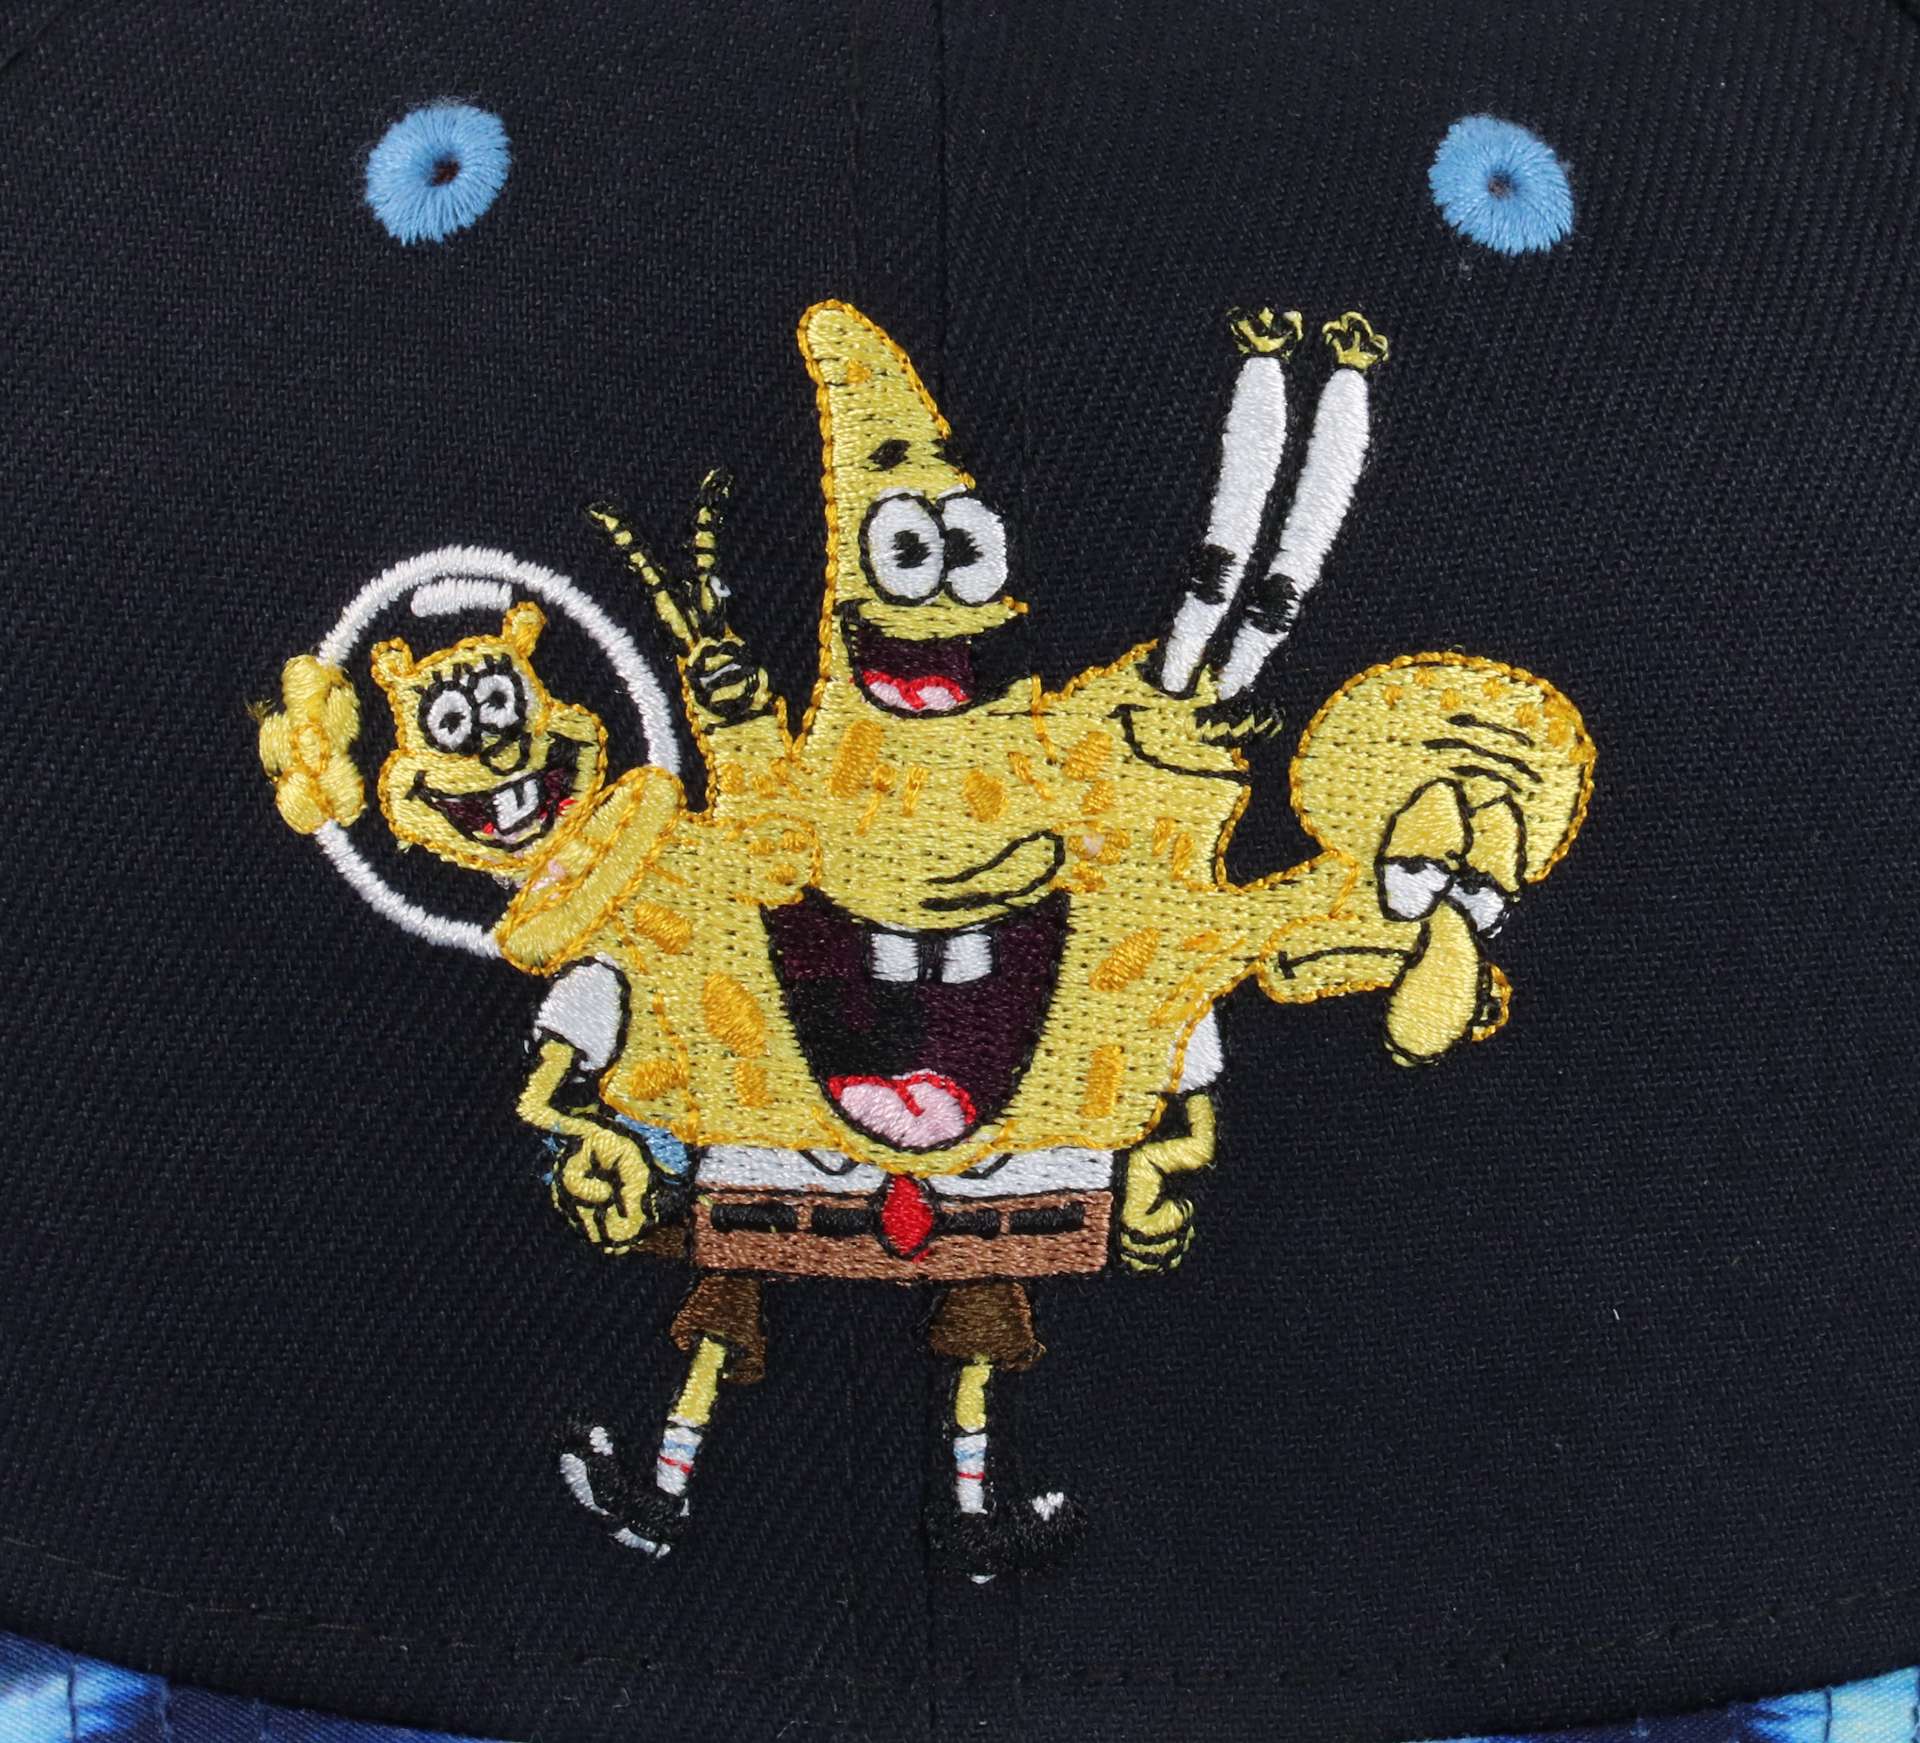 Spongebob Squarepants Spongebob Navy 9Fifty Original Fit Snapback Cap New Era